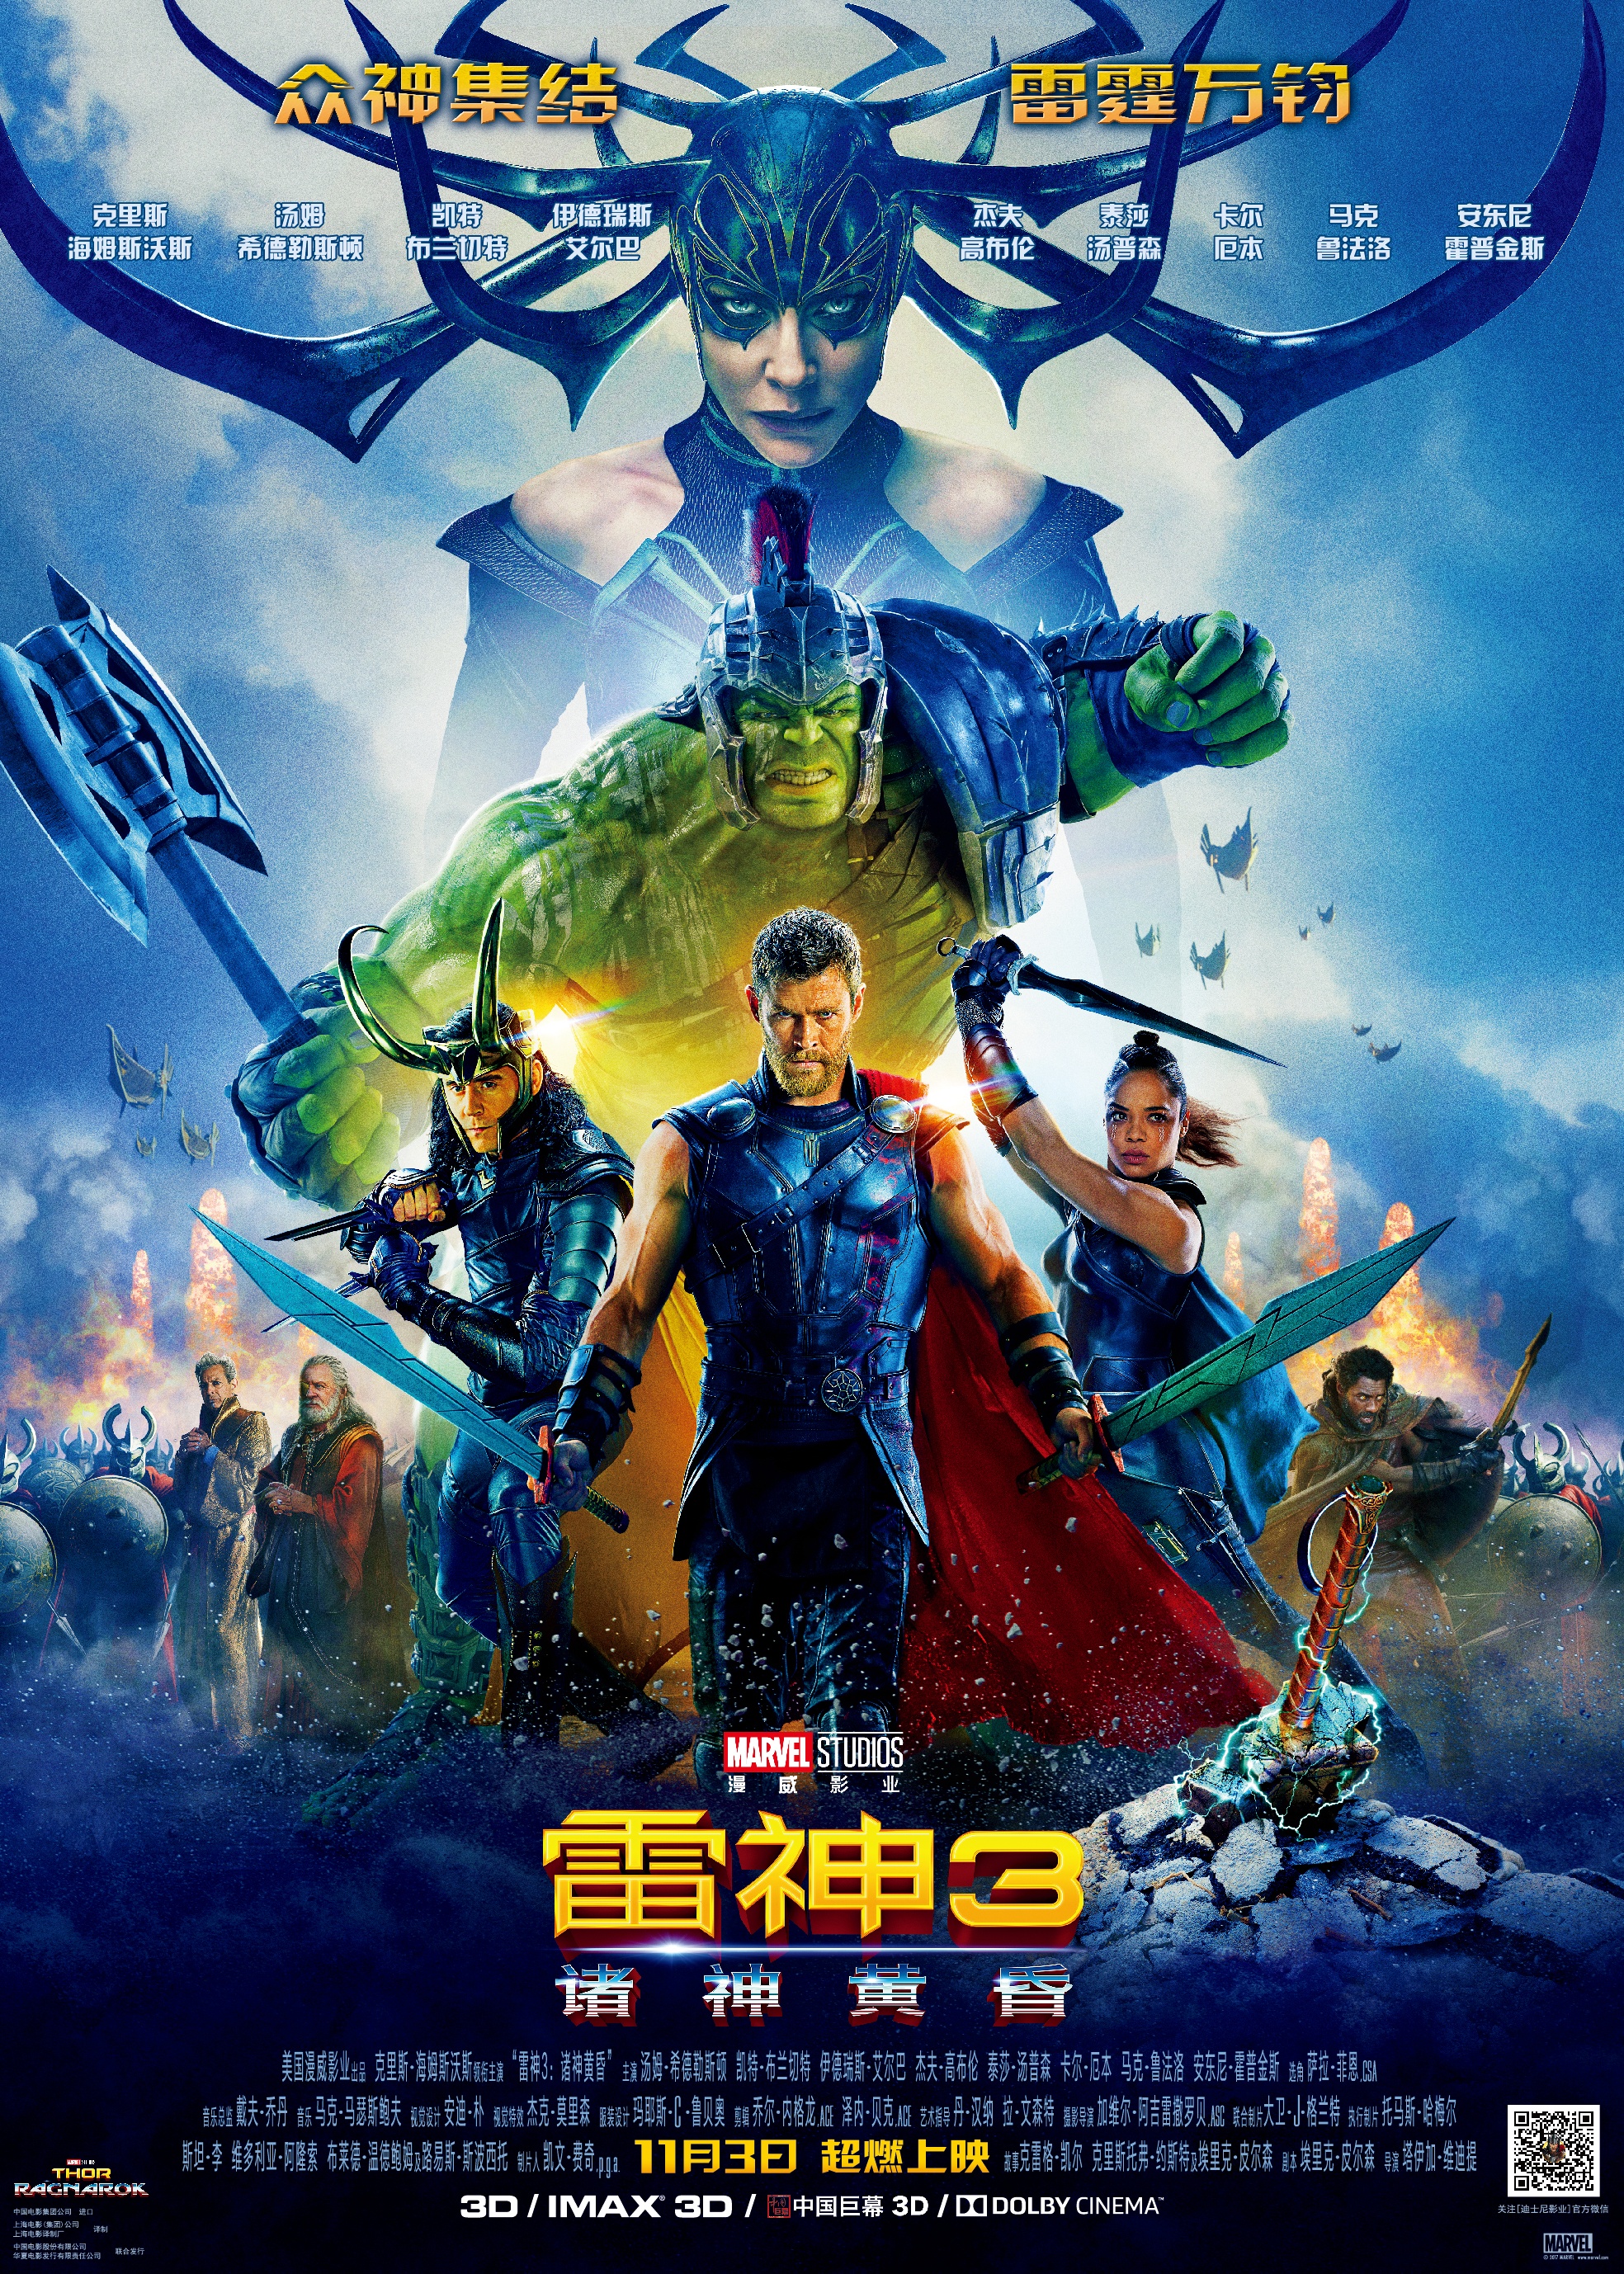 中国影迷缘何喜欢超级英雄片 视听与英雄情结并重